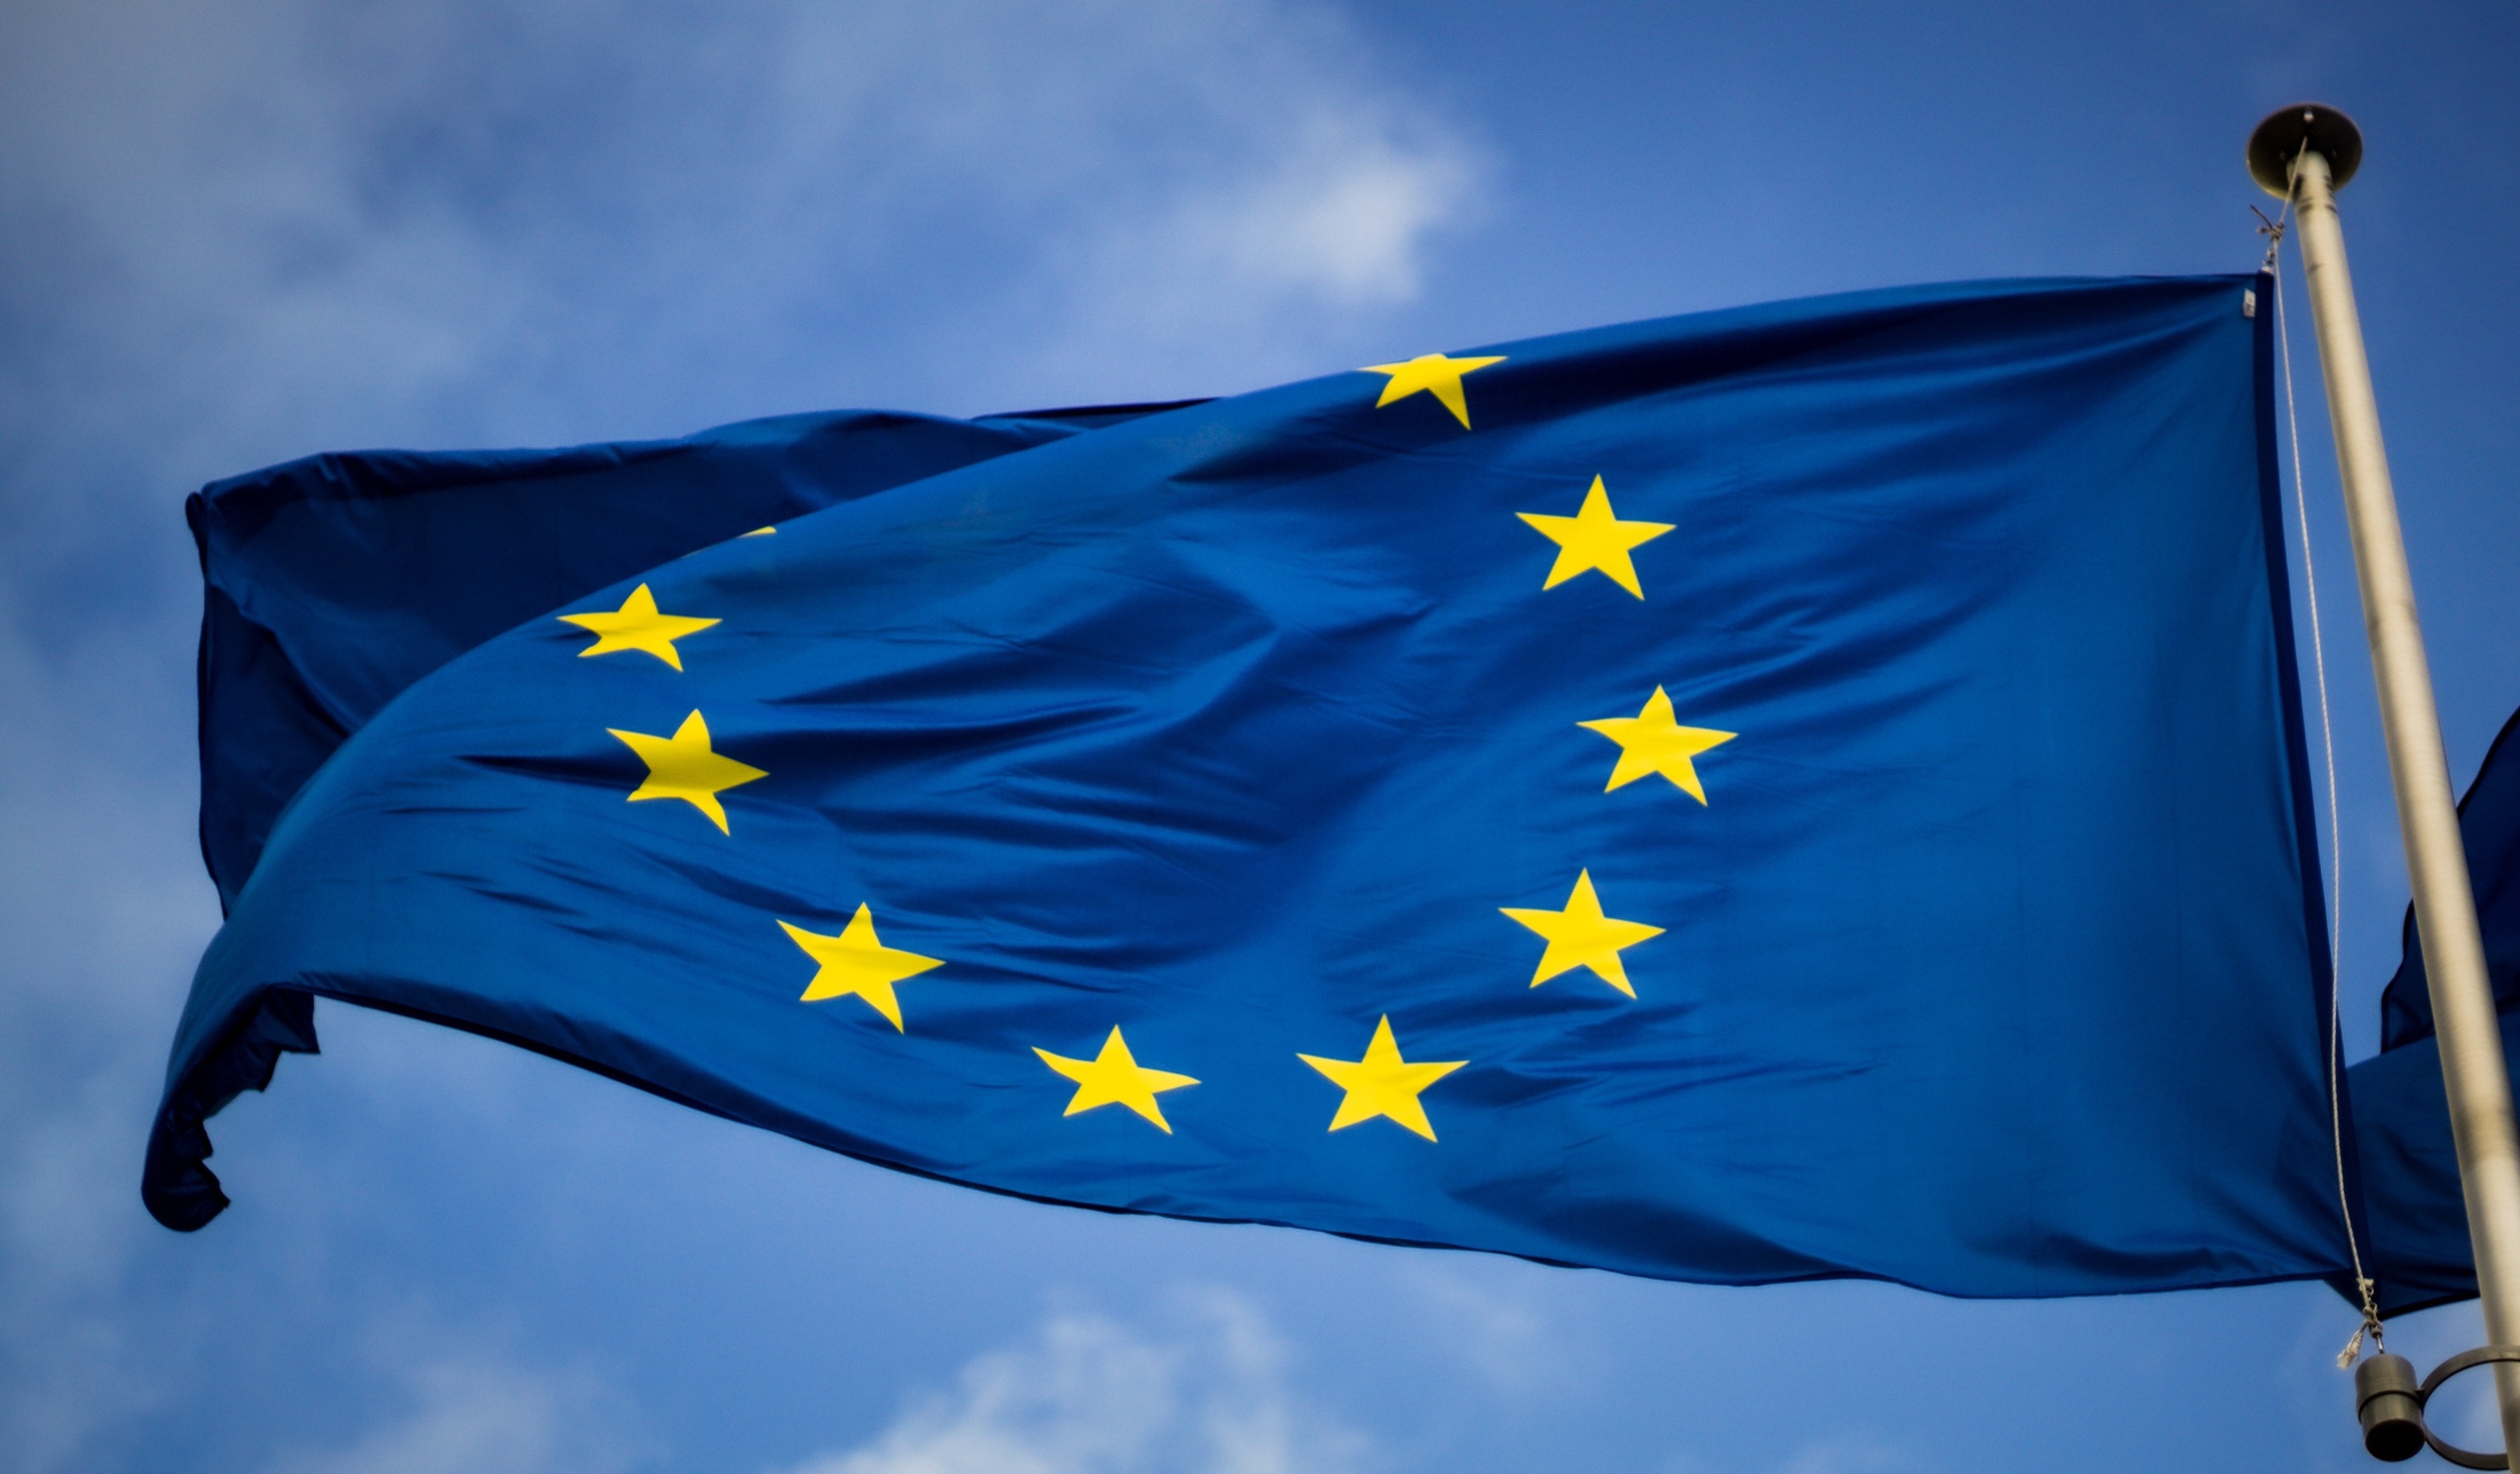 De overeenkomst van de Europese Unie en Tunesië over het terugdringen van illegale migratie stuit op kritiek van binnenuit. EU-buitenlandchef Josep Borrell, een aantal EU-landen en juristen van de Raad van de EU hebben volgens onder meer The Guardian en La Stampa bezwaar gemaakt.